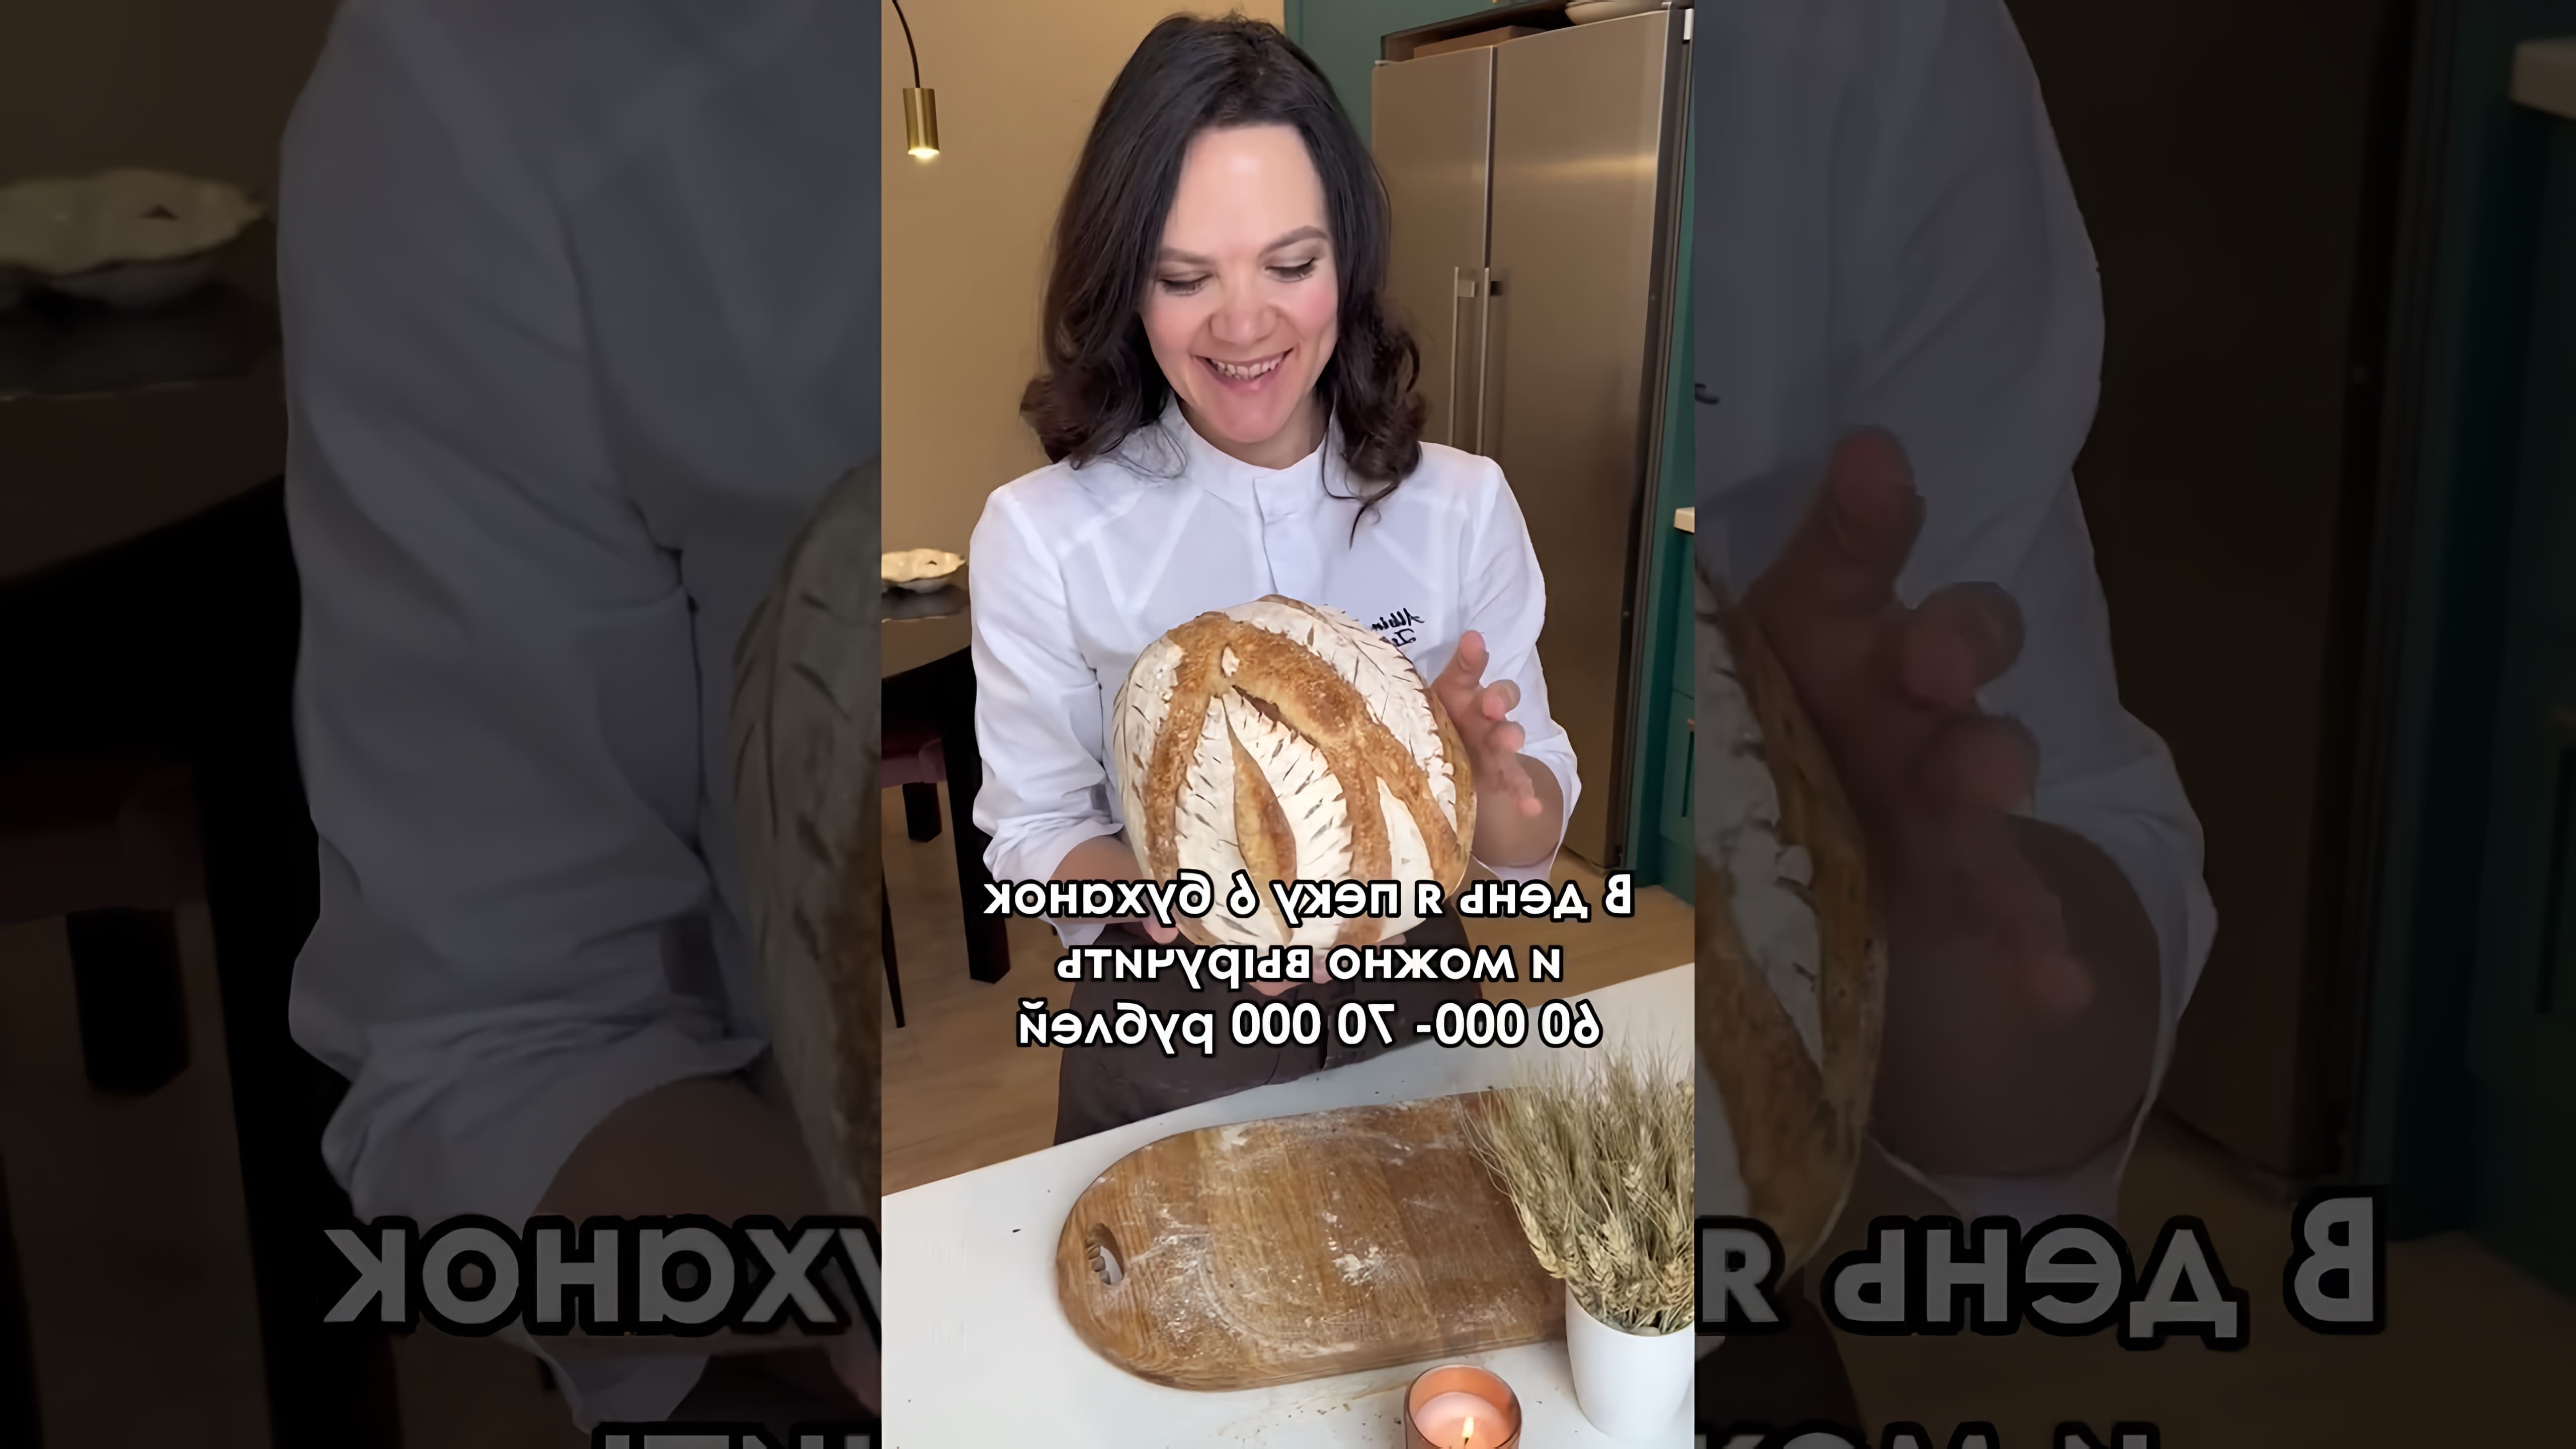 Видео рассказывает о продаже домашнего хлеба за 450 рублей в сельской деревне, где магазинный хлеб стоит 30 рублей